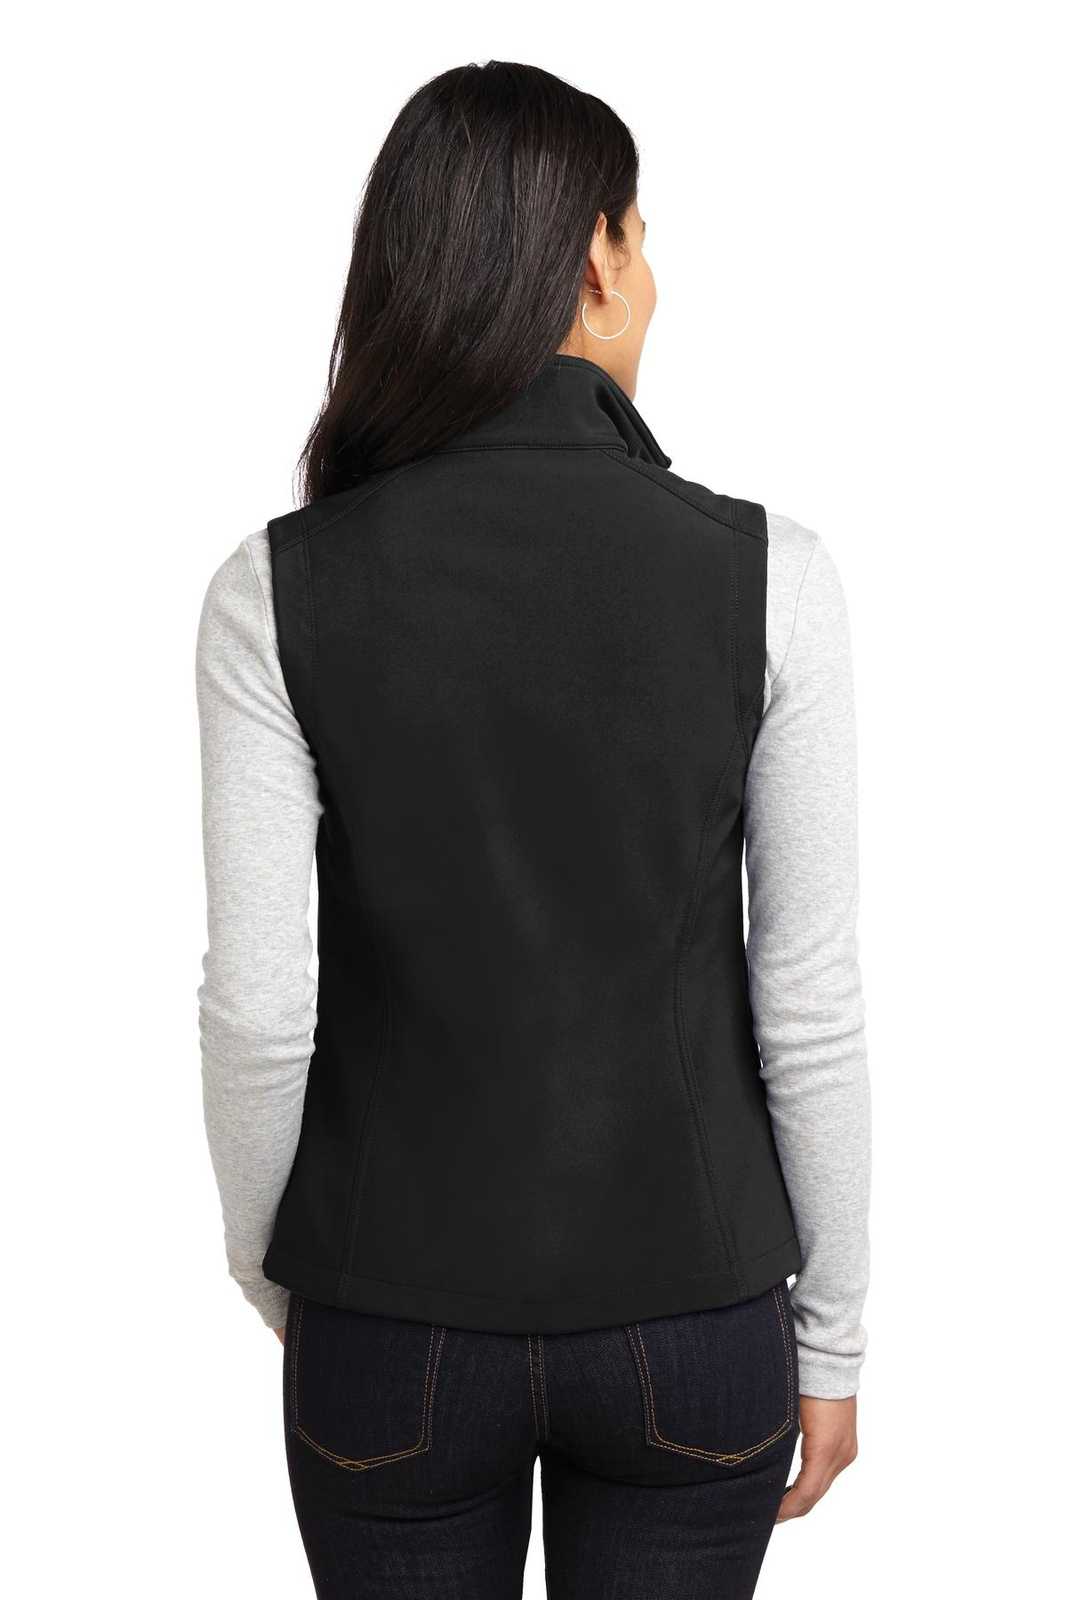 Port Authority L325 Ladies Core Soft Shell Vest - Black - HIT a Double - 1